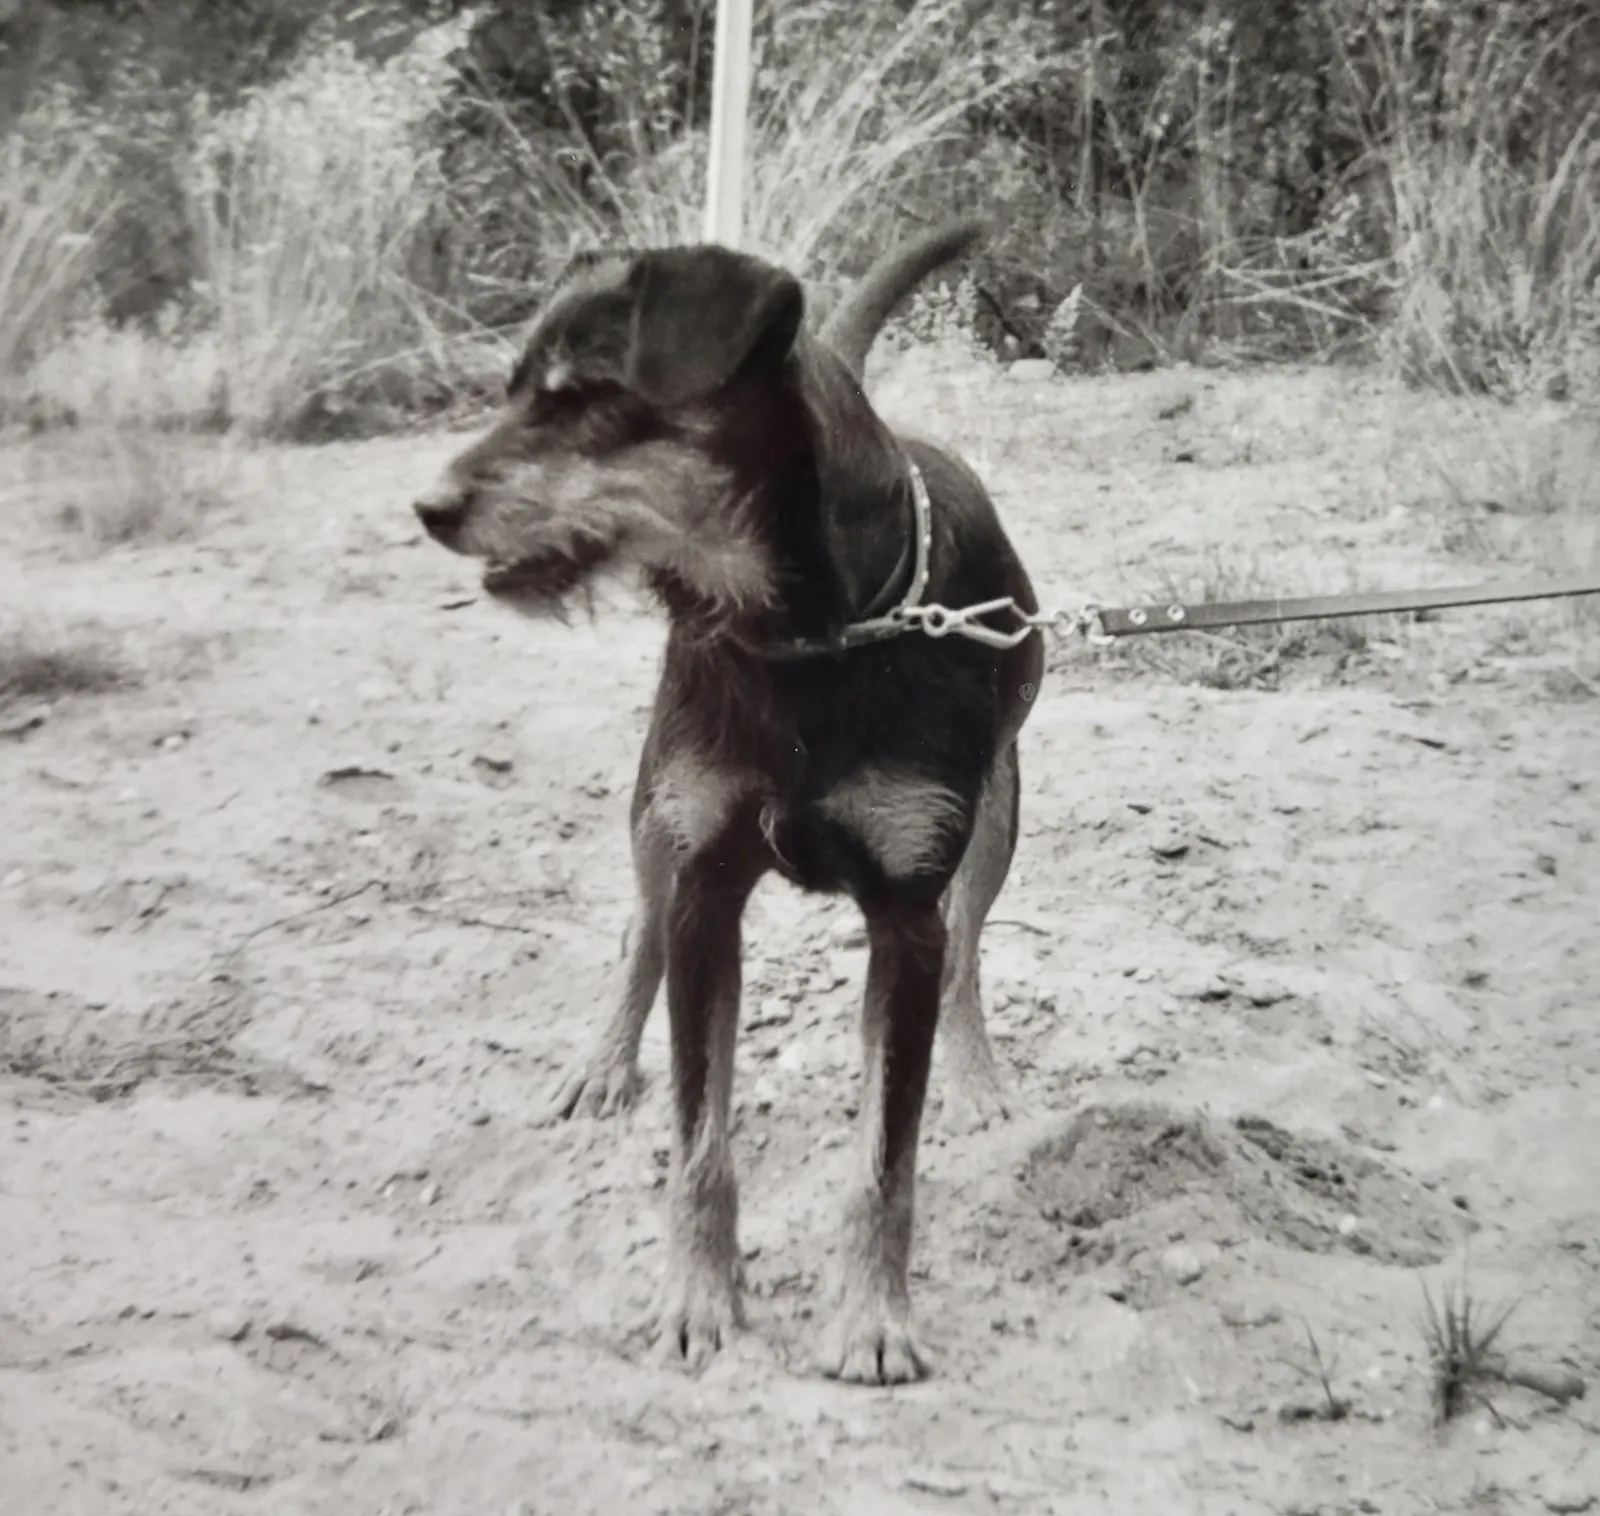 Schwarz-weiß-Foto: Ein kurzhaariger schwarzer Hund mit braunen Abzeichen steht angeleint auf sandigem Untergrund.